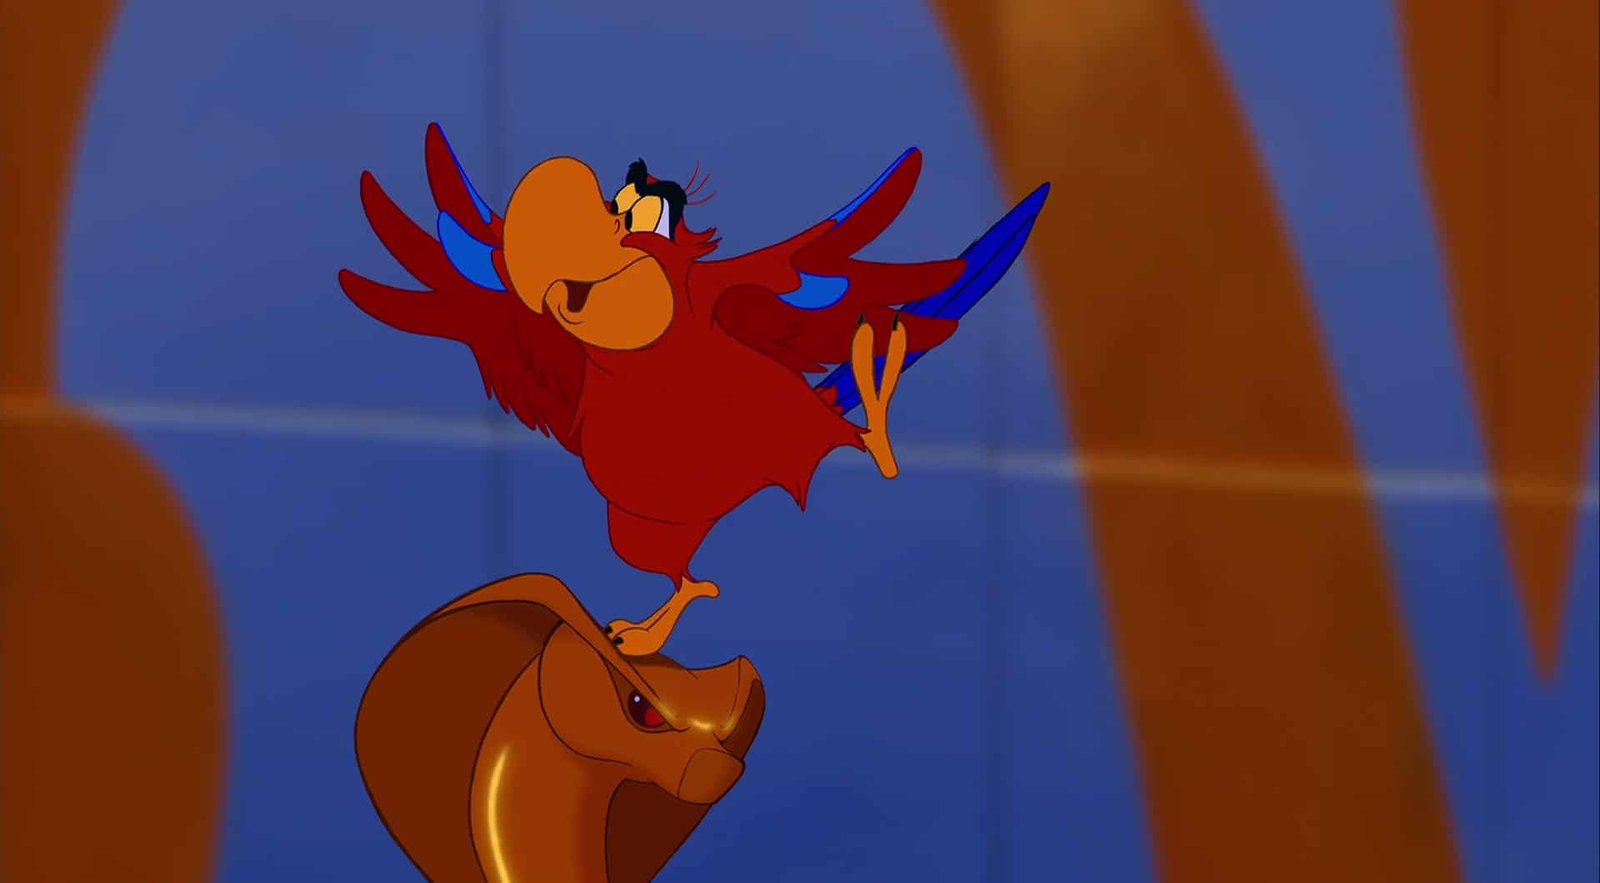 Iago, un perroquet rouge, vole énergiquement avec les ailes déployées, tandis qu'Abu, un petit singe brun, l'observe attentivement d'en bas, dans un décor désertique depuis un